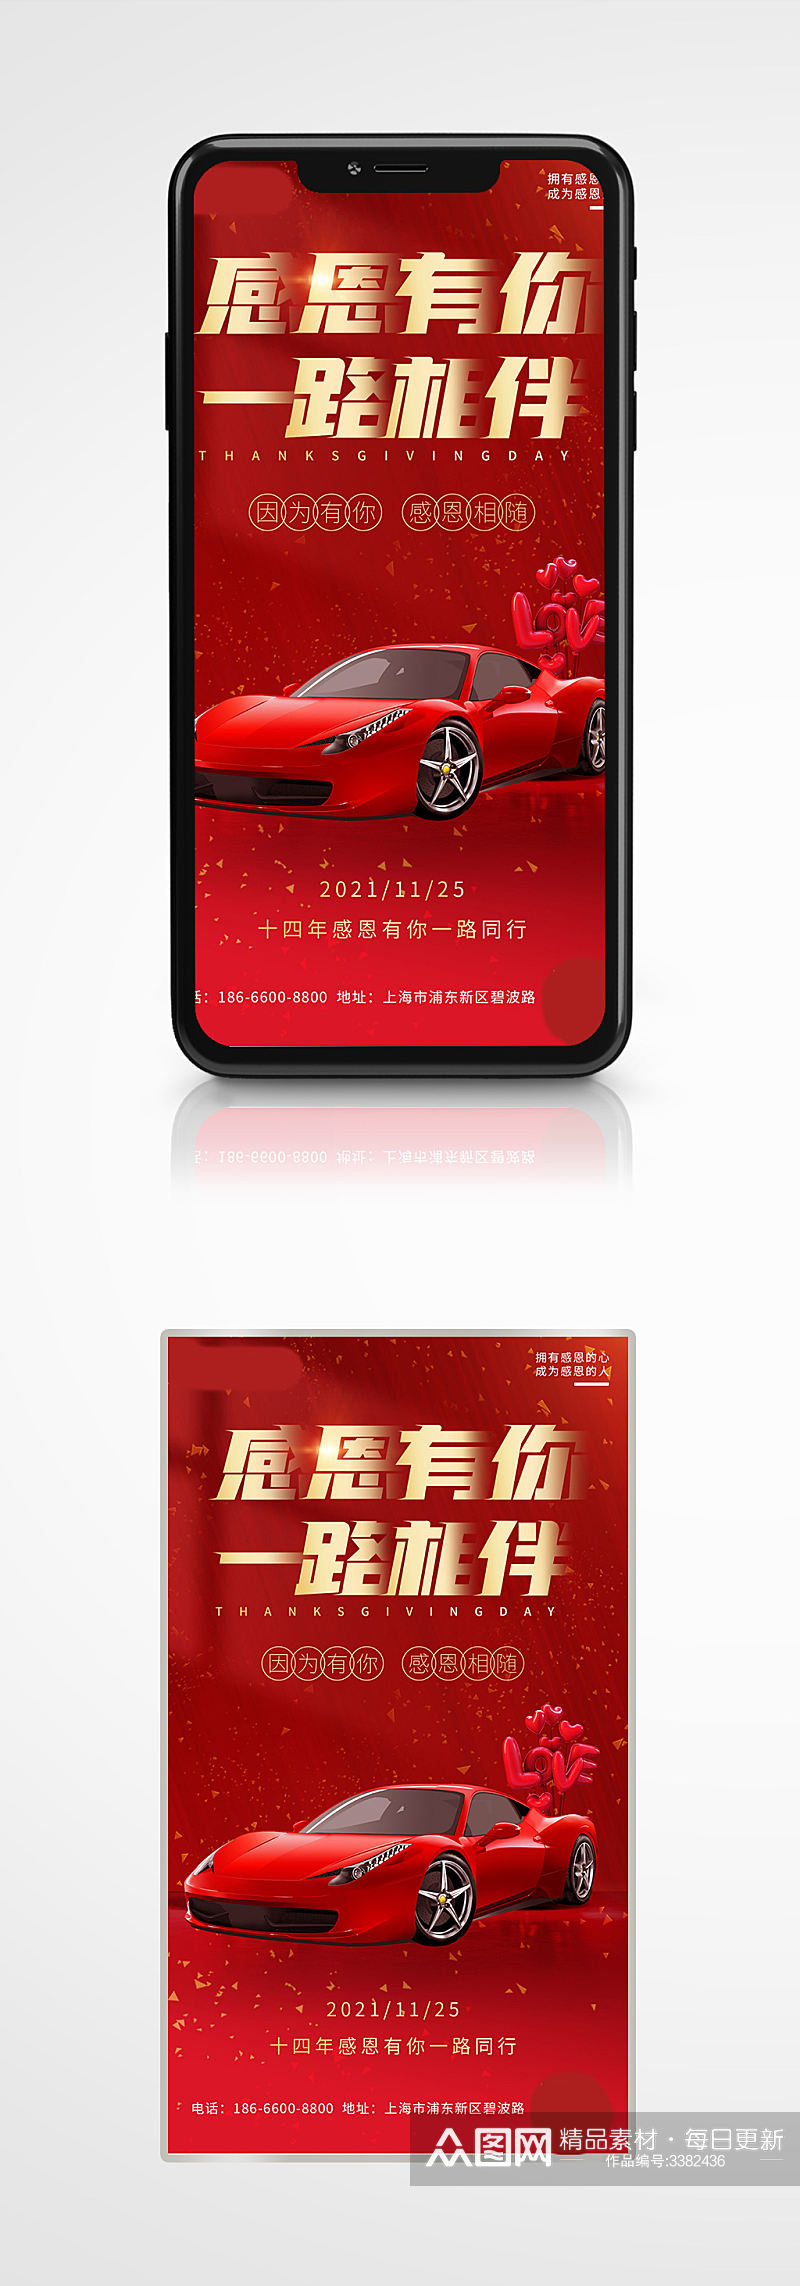 红色大气感恩相伴汽车感恩节手机海报营销素材